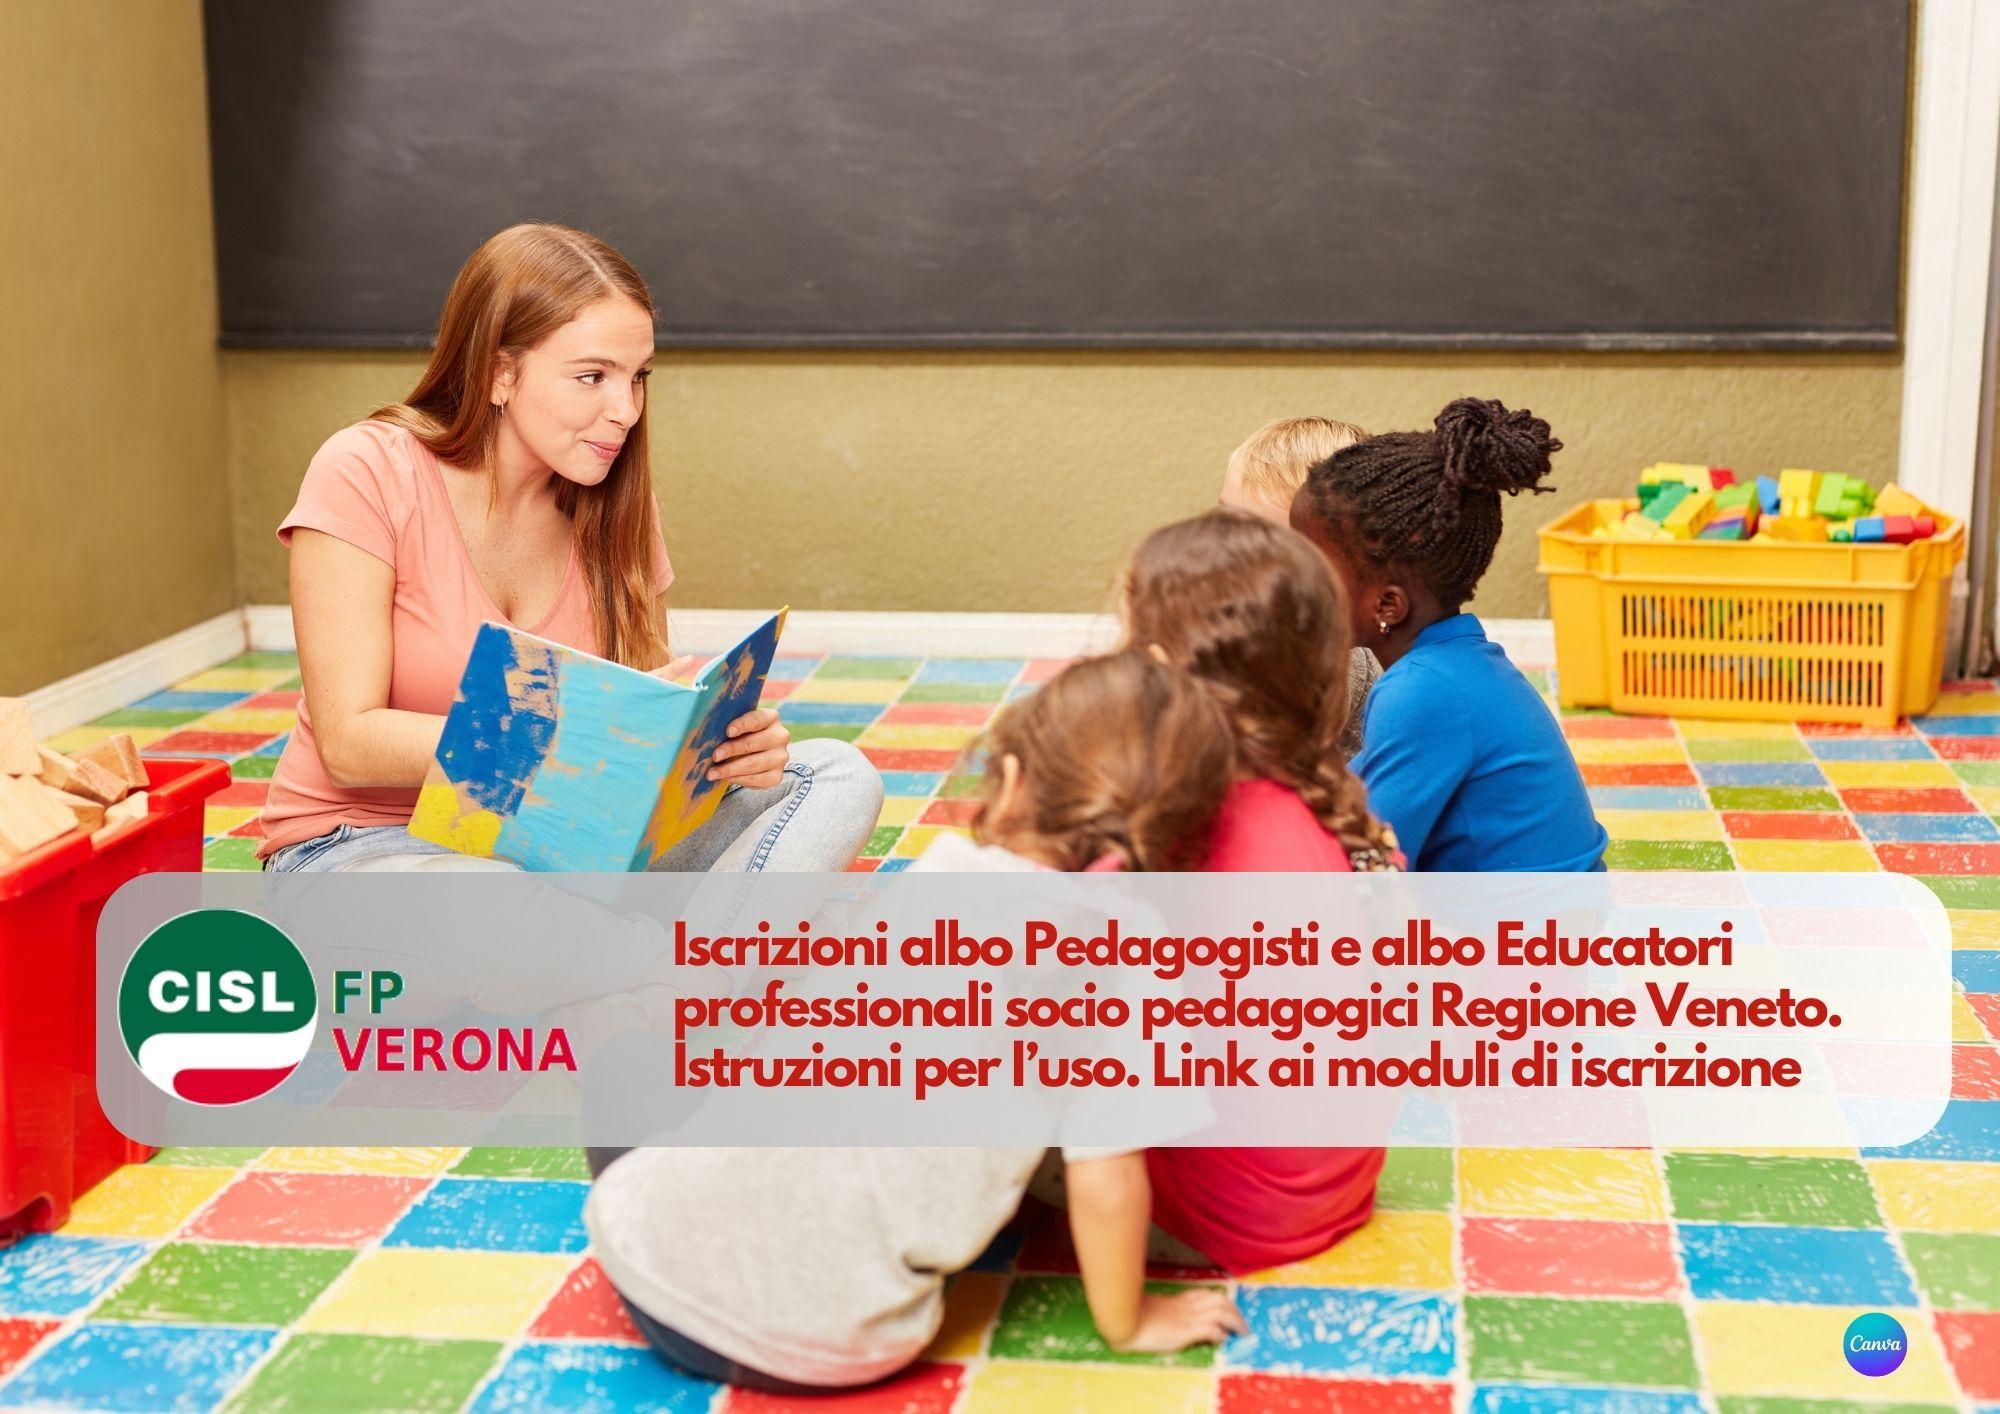 CISL FP Verona. Iscrizioni albo Pedagogisti e albo Educatori professionali socio pedagogici